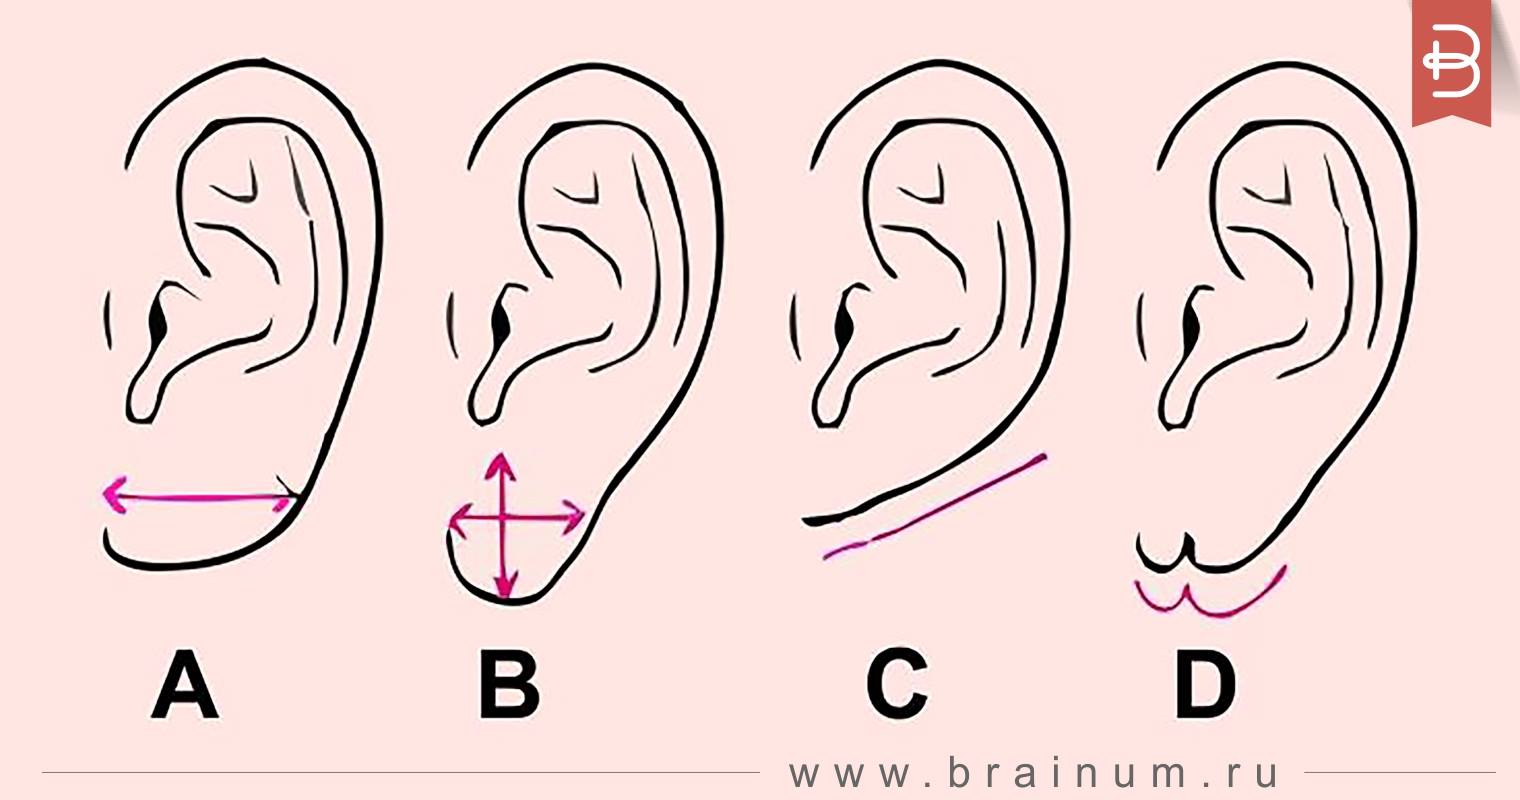 4 рта 4 уха. Мочка уха физиогномика. Формы ушей и их названия.